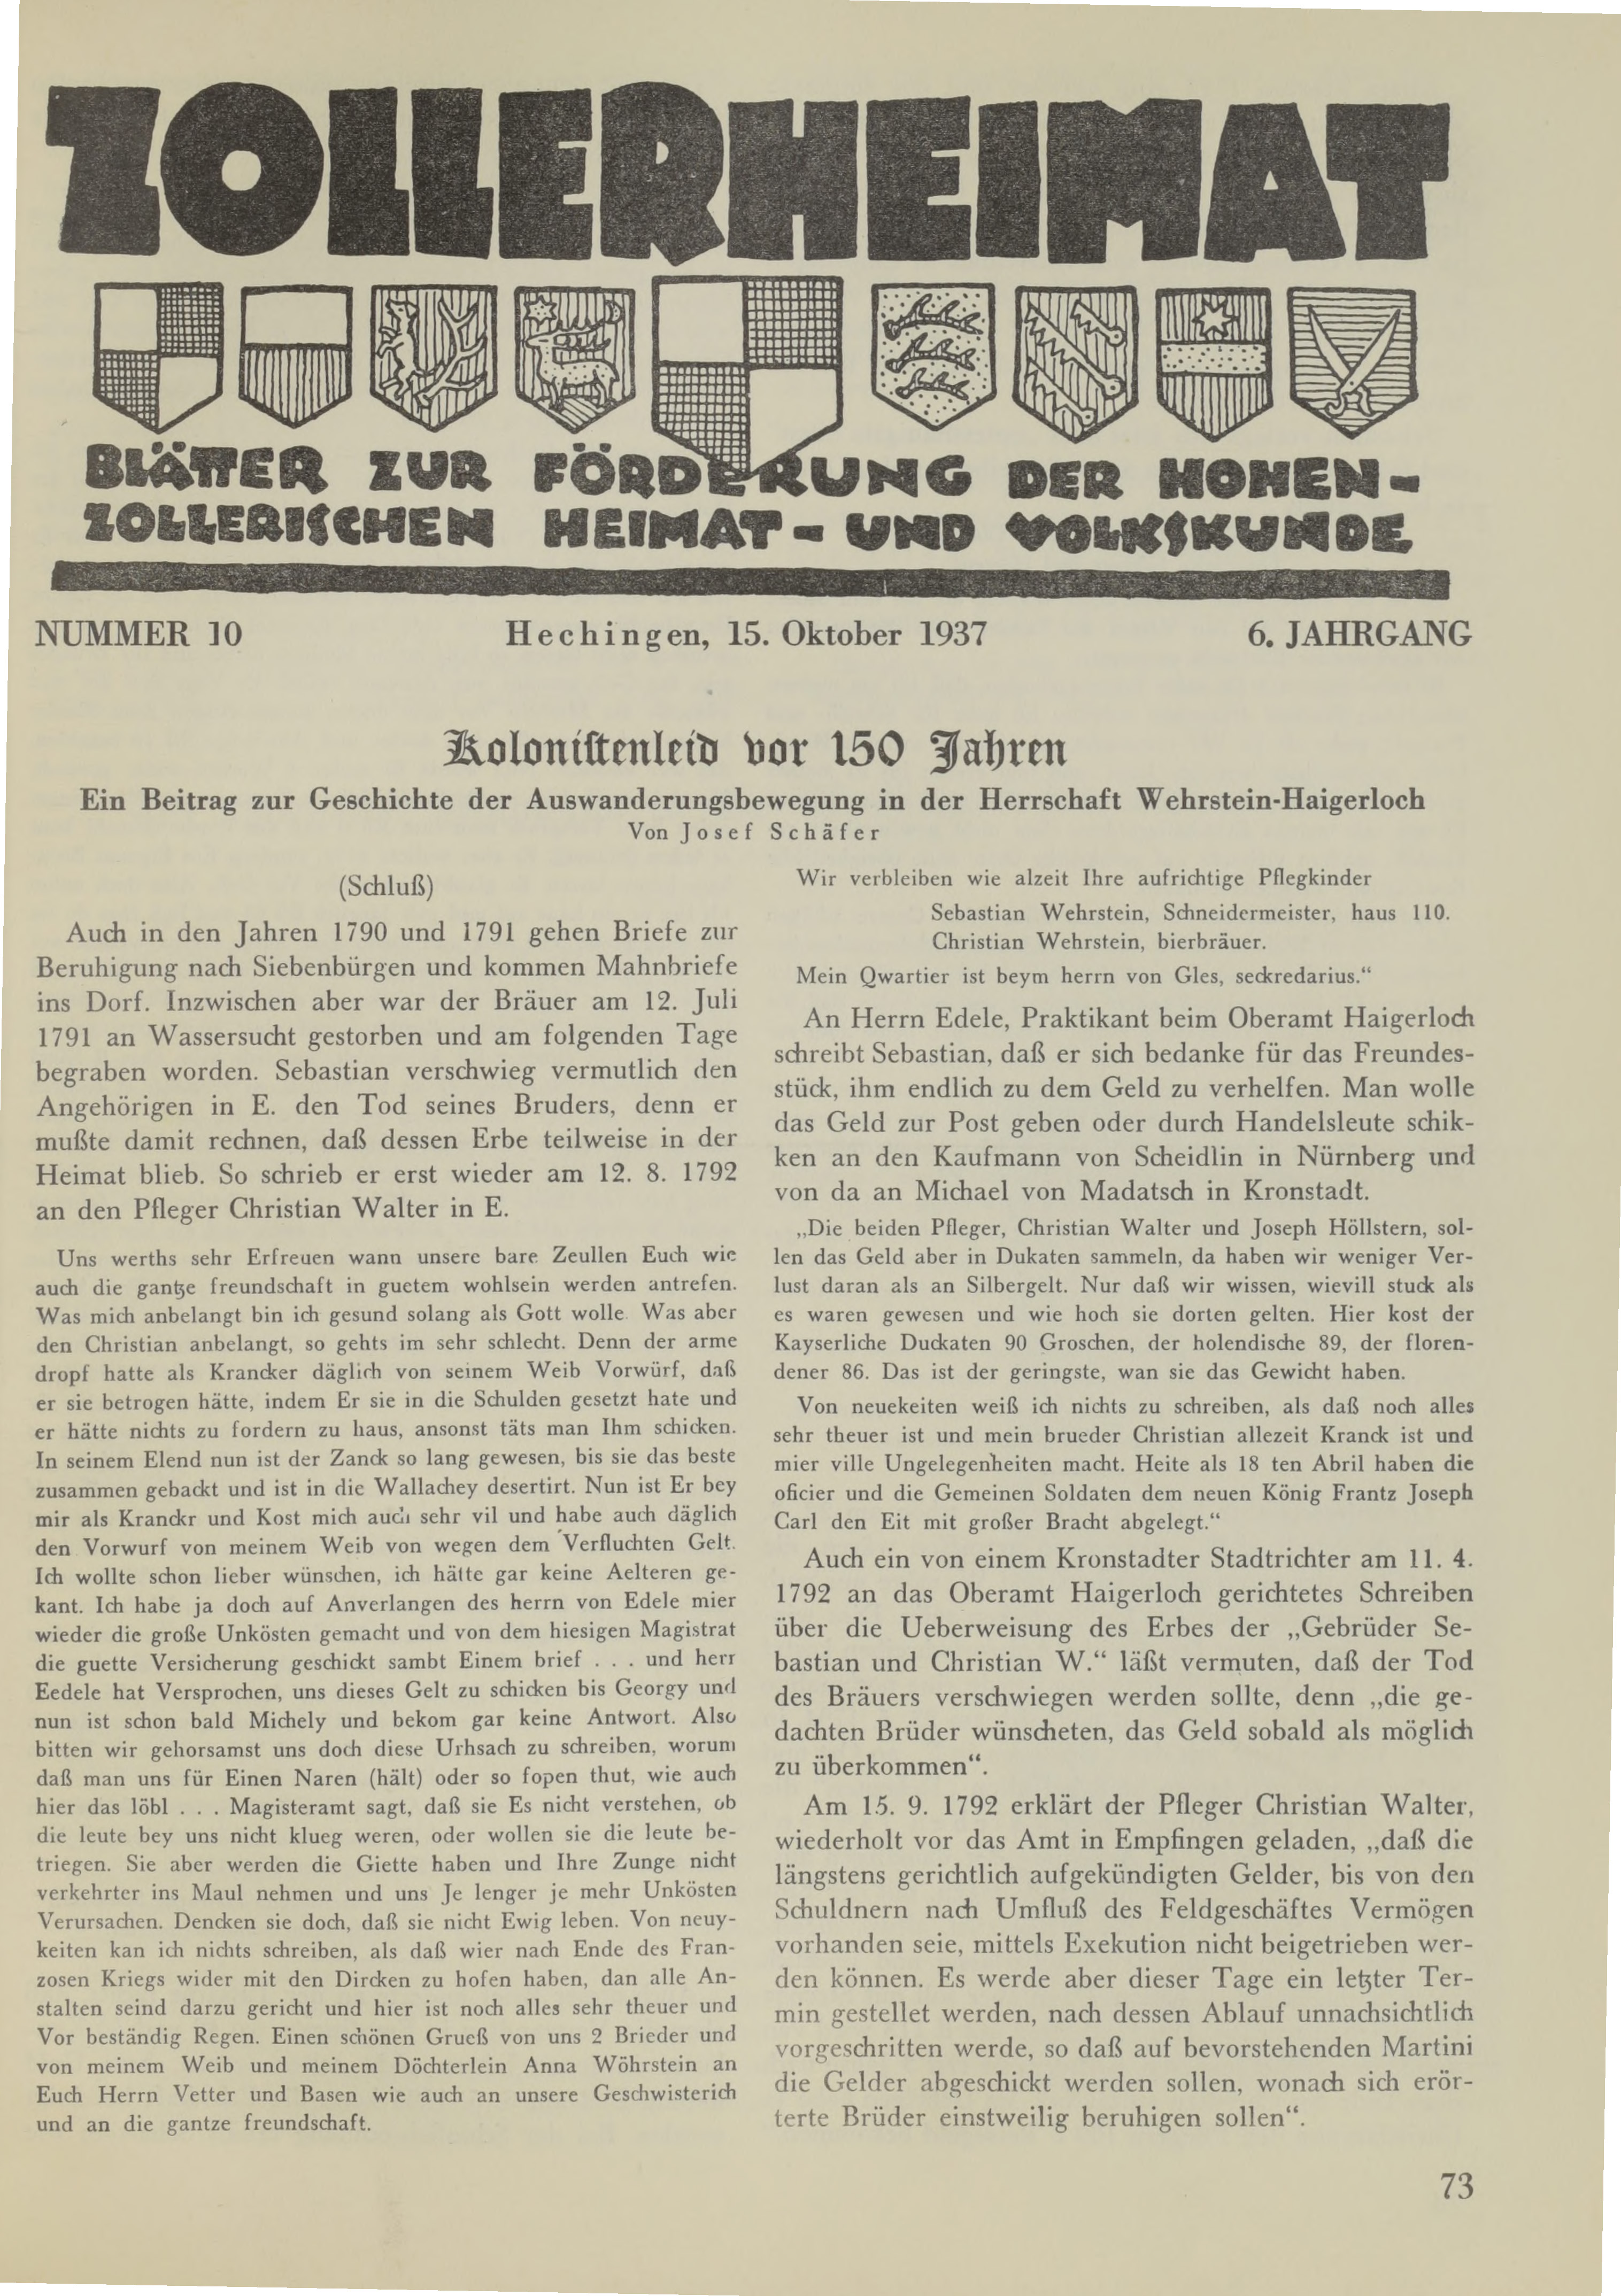                     Ansehen Bd. 6 Nr. 10 (1937): Zollerheimat
                